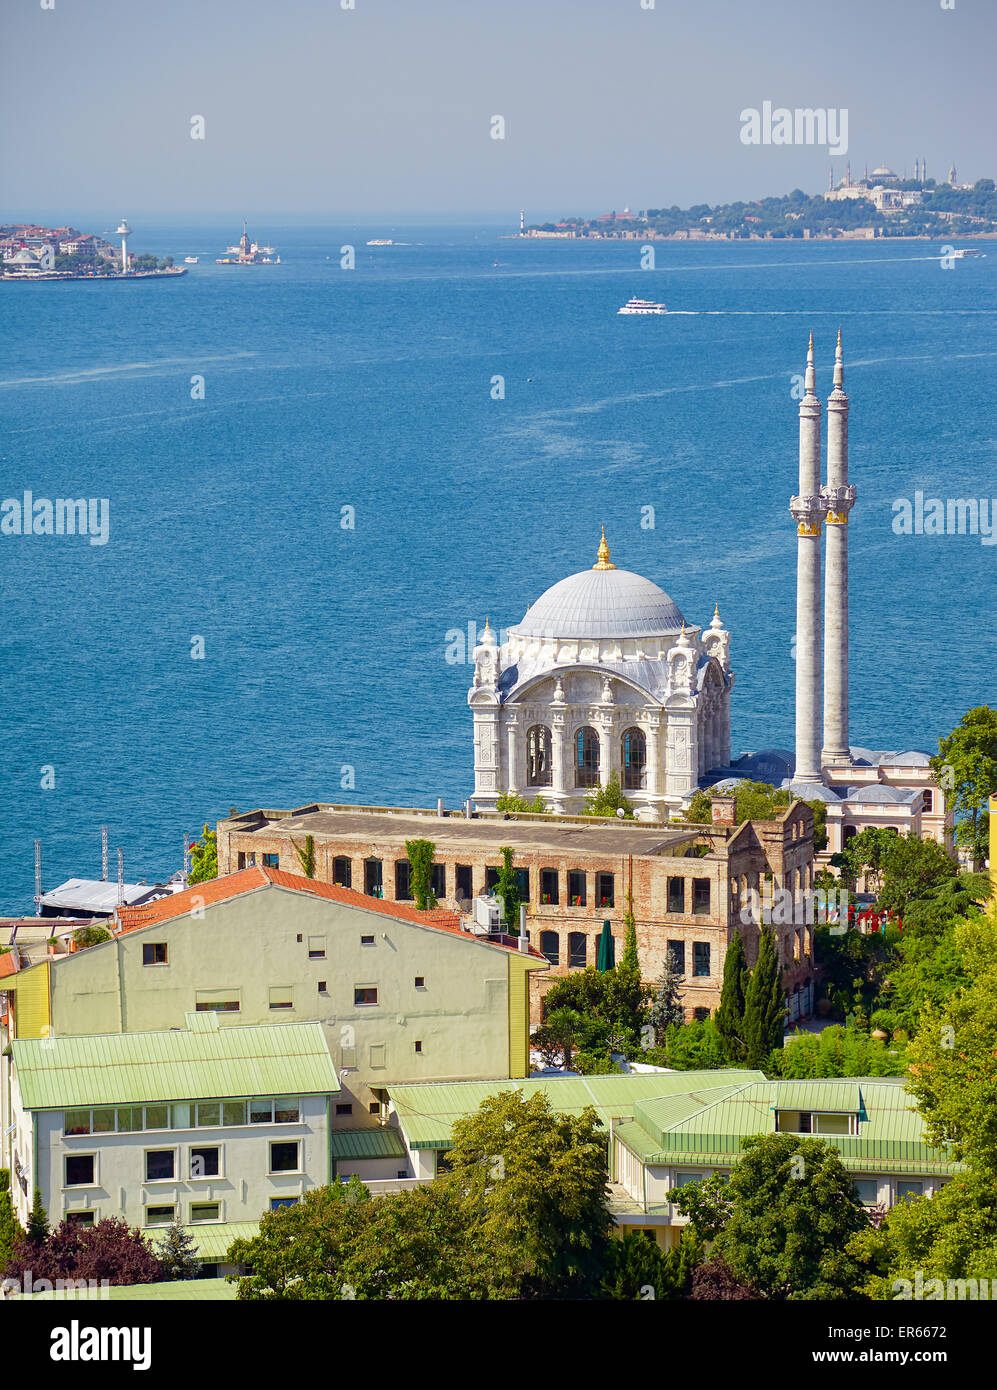 La vista della Moschea Ortakoy (Grand Imperial Moschea del Sultano Abdulmecid) contro lo sfondo del Bosforo. Istanbul, Turchia Foto Stock